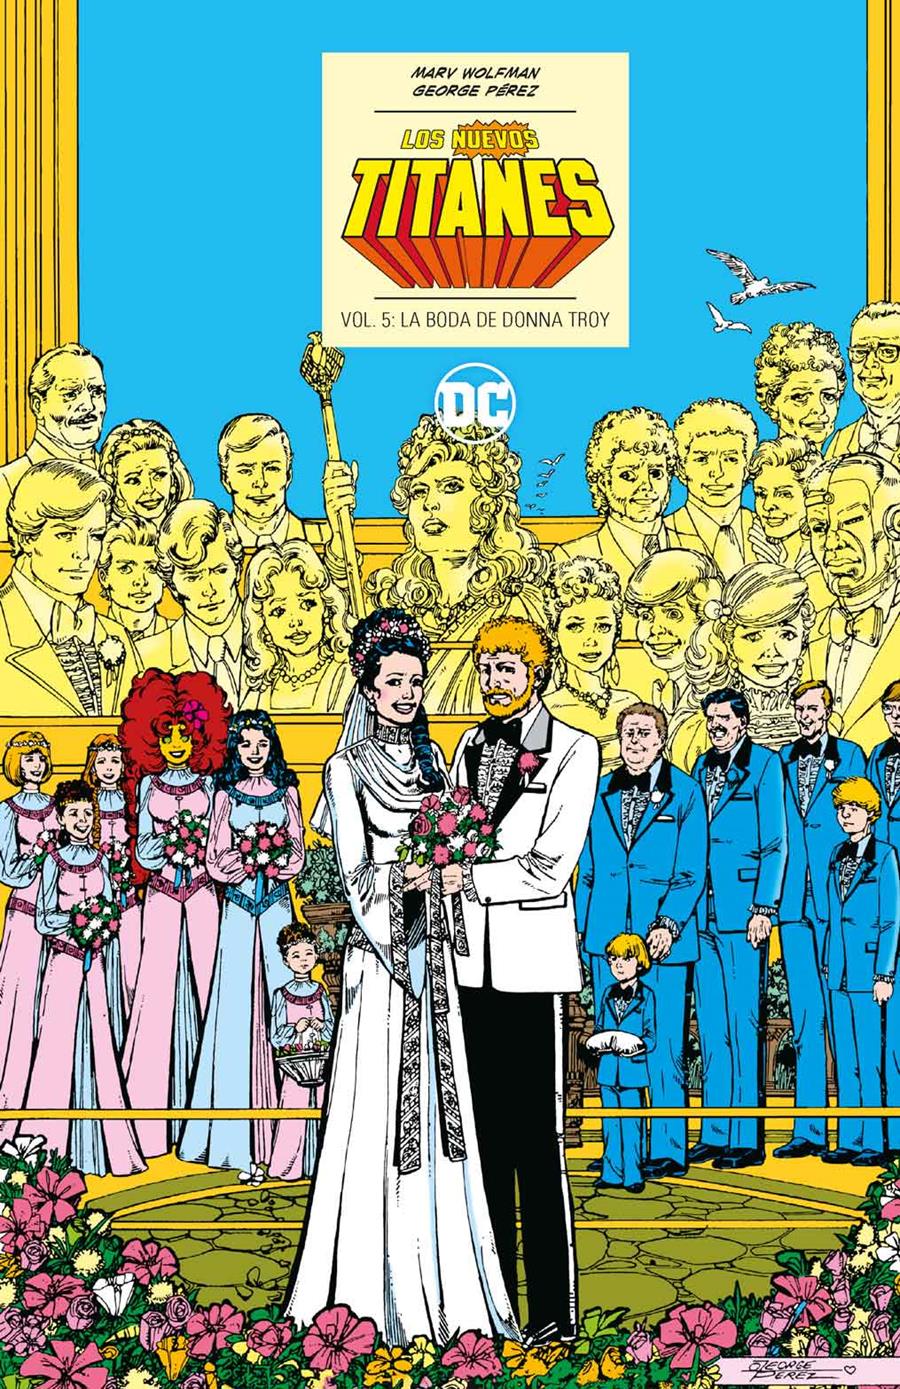 Los Nuevos Titanes vol. 5 de 6: La boda de Donna Troy (DC Icons) | N1123-ECC34 | George Pérez / Marv Wolfman | Terra de Còmic - Tu tienda de cómics online especializada en cómics, manga y merchandising